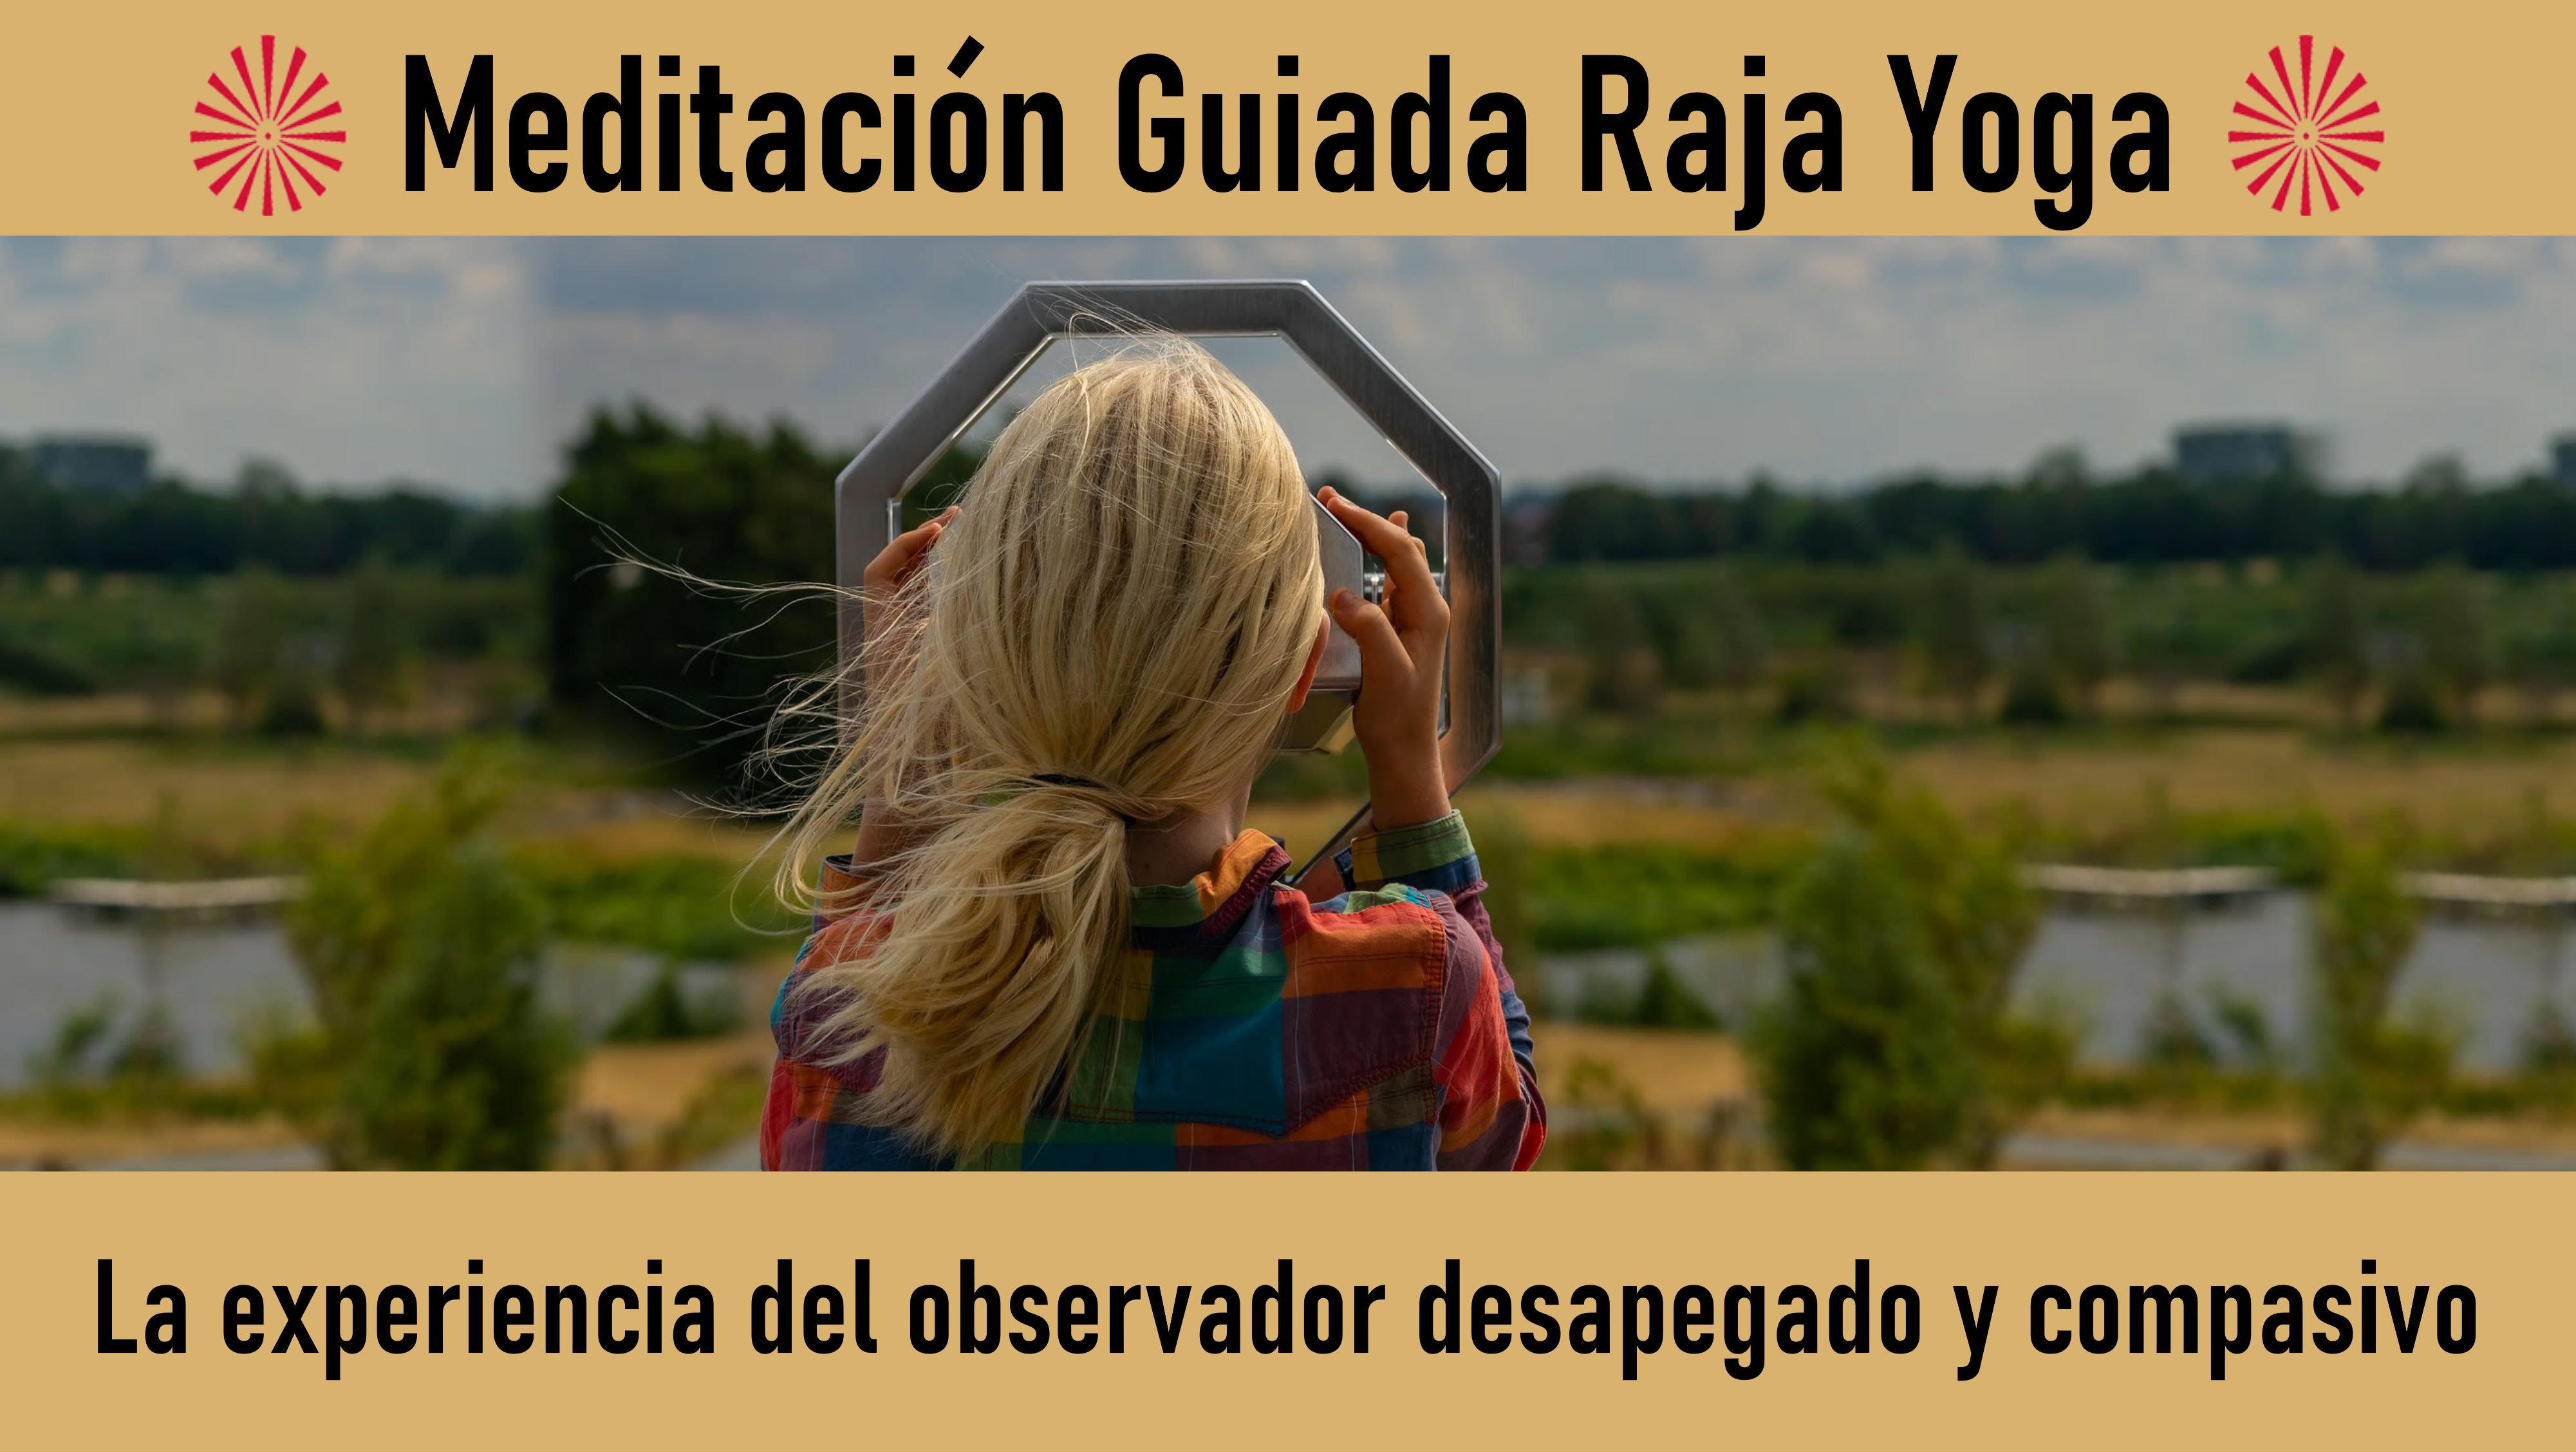 Meditación Raja Yoga: La experiencia del observador desapegado y compasivo (2 Julio 2020) On-line desde Mallorca